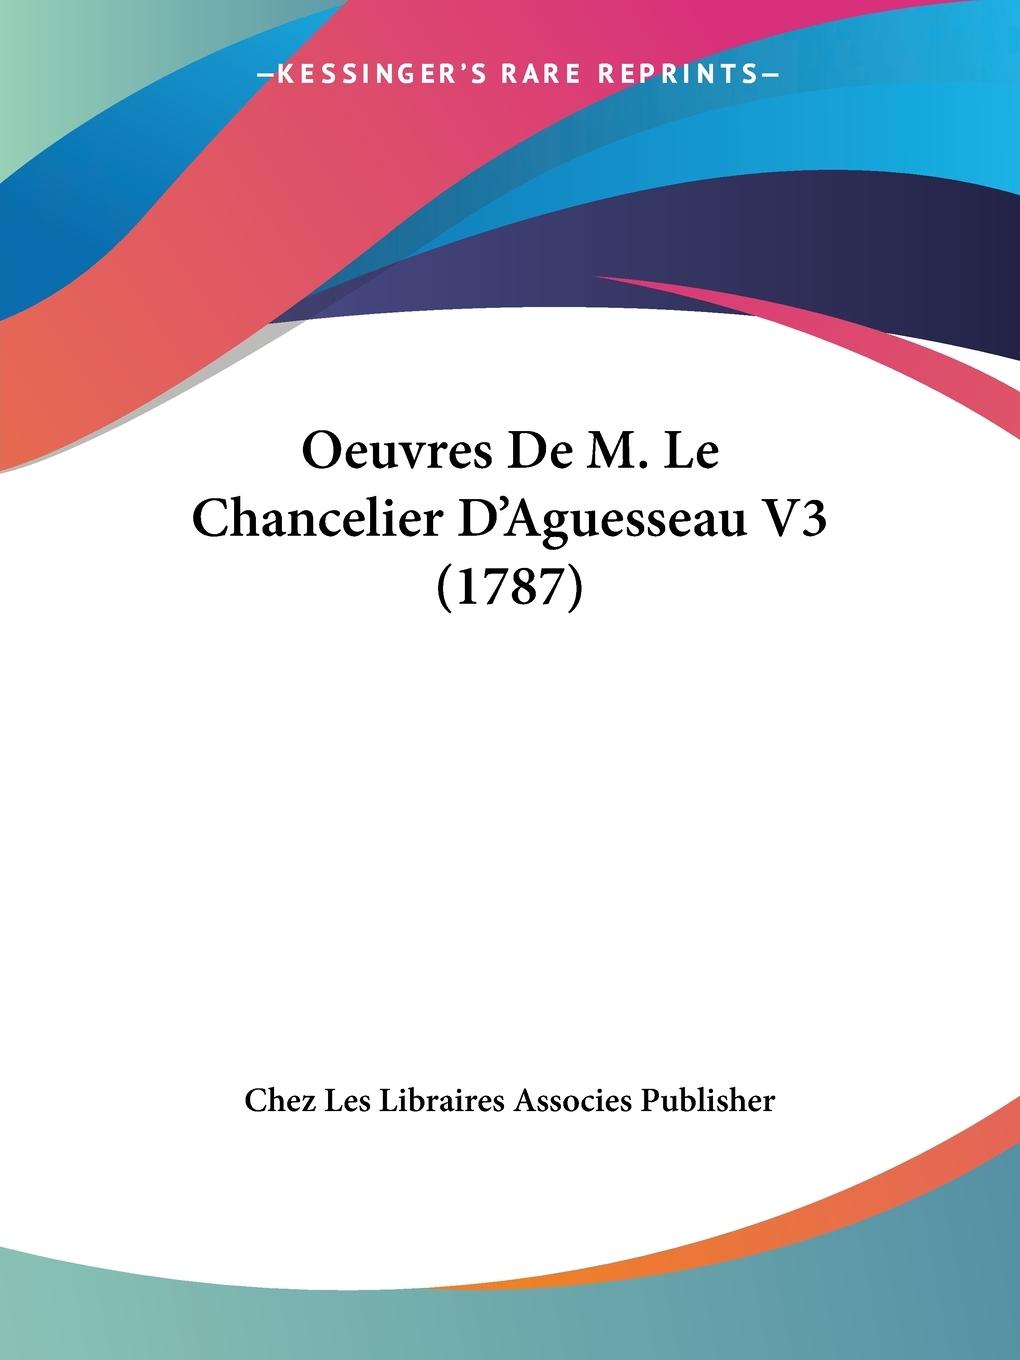 Oeuvres De M. Le Chancelier D Aguesseau V3 (1787) - Chez Les Libraires Associes Publisher